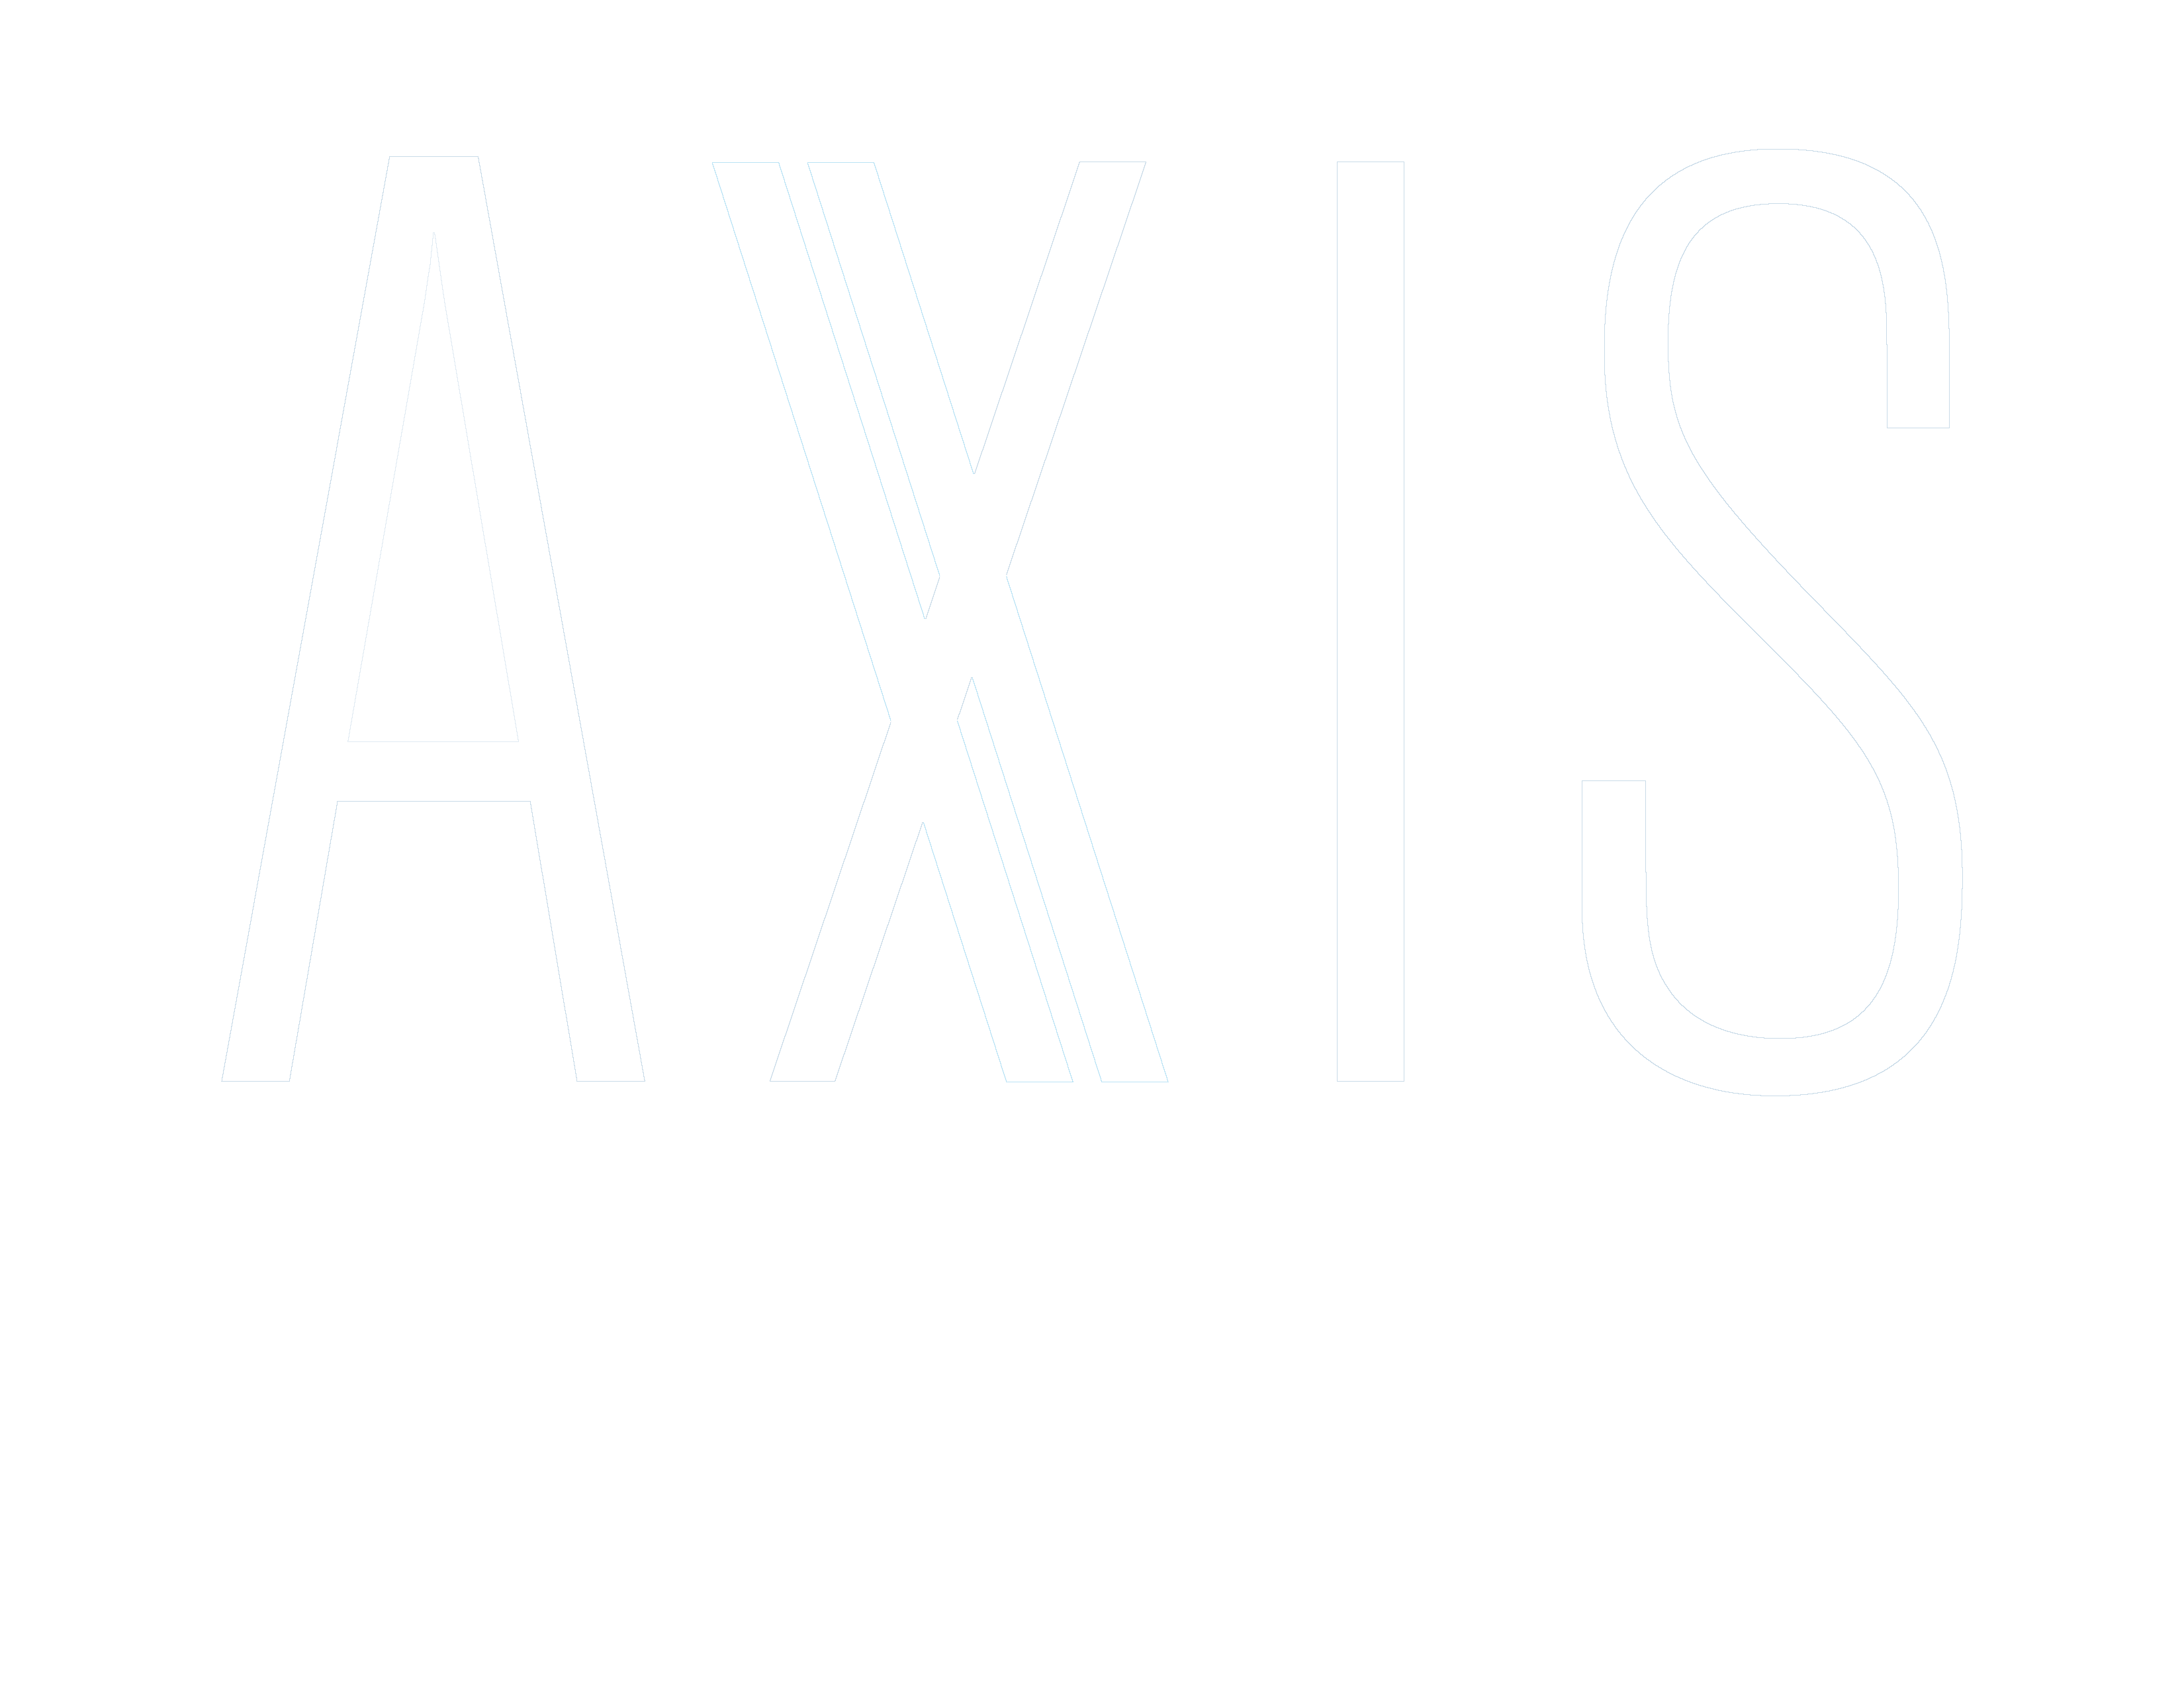 Axis - Verana Delray